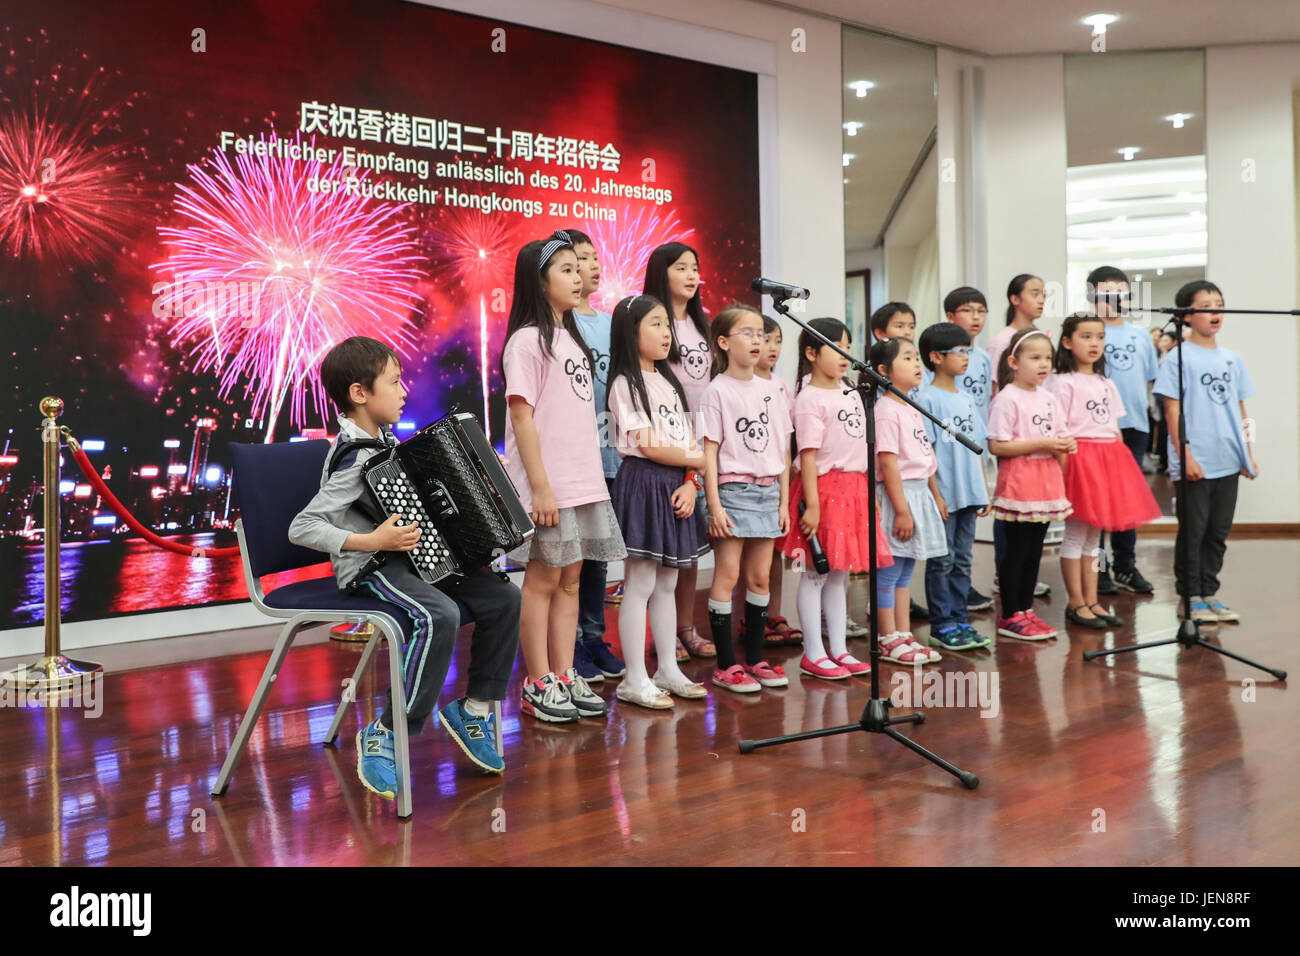 Berlin, Deutschland. 26. Juni 2017. Kinder singen ein Lied im Rahmen eines Empfangs, den 20. Jahrestag des Hong Kong Rückkehr nach China bei der chinesischen Botschaft in Berlin, Hauptstadt Deutschlands, am 26. Juni 2017 zu feiern. Bildnachweis: Shan Yuqi/Xinhua/Alamy Live-Nachrichten Stockfoto